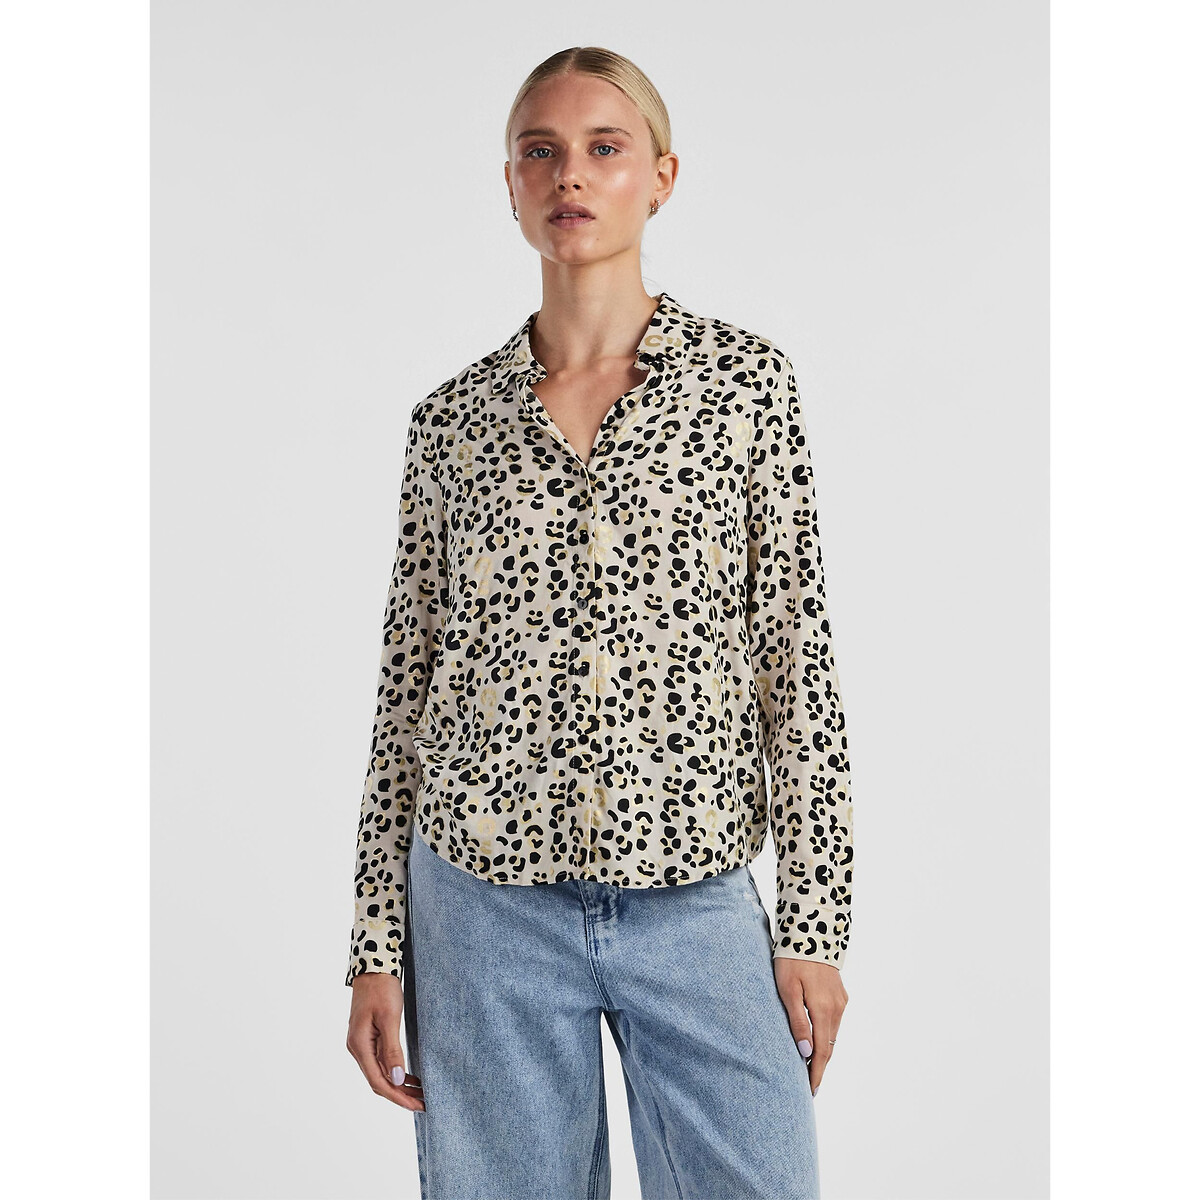 Блузка с длинными рукавами и леопардовым принтом XL другие блузка с длинными рукавами и леопардовым принтом l другие